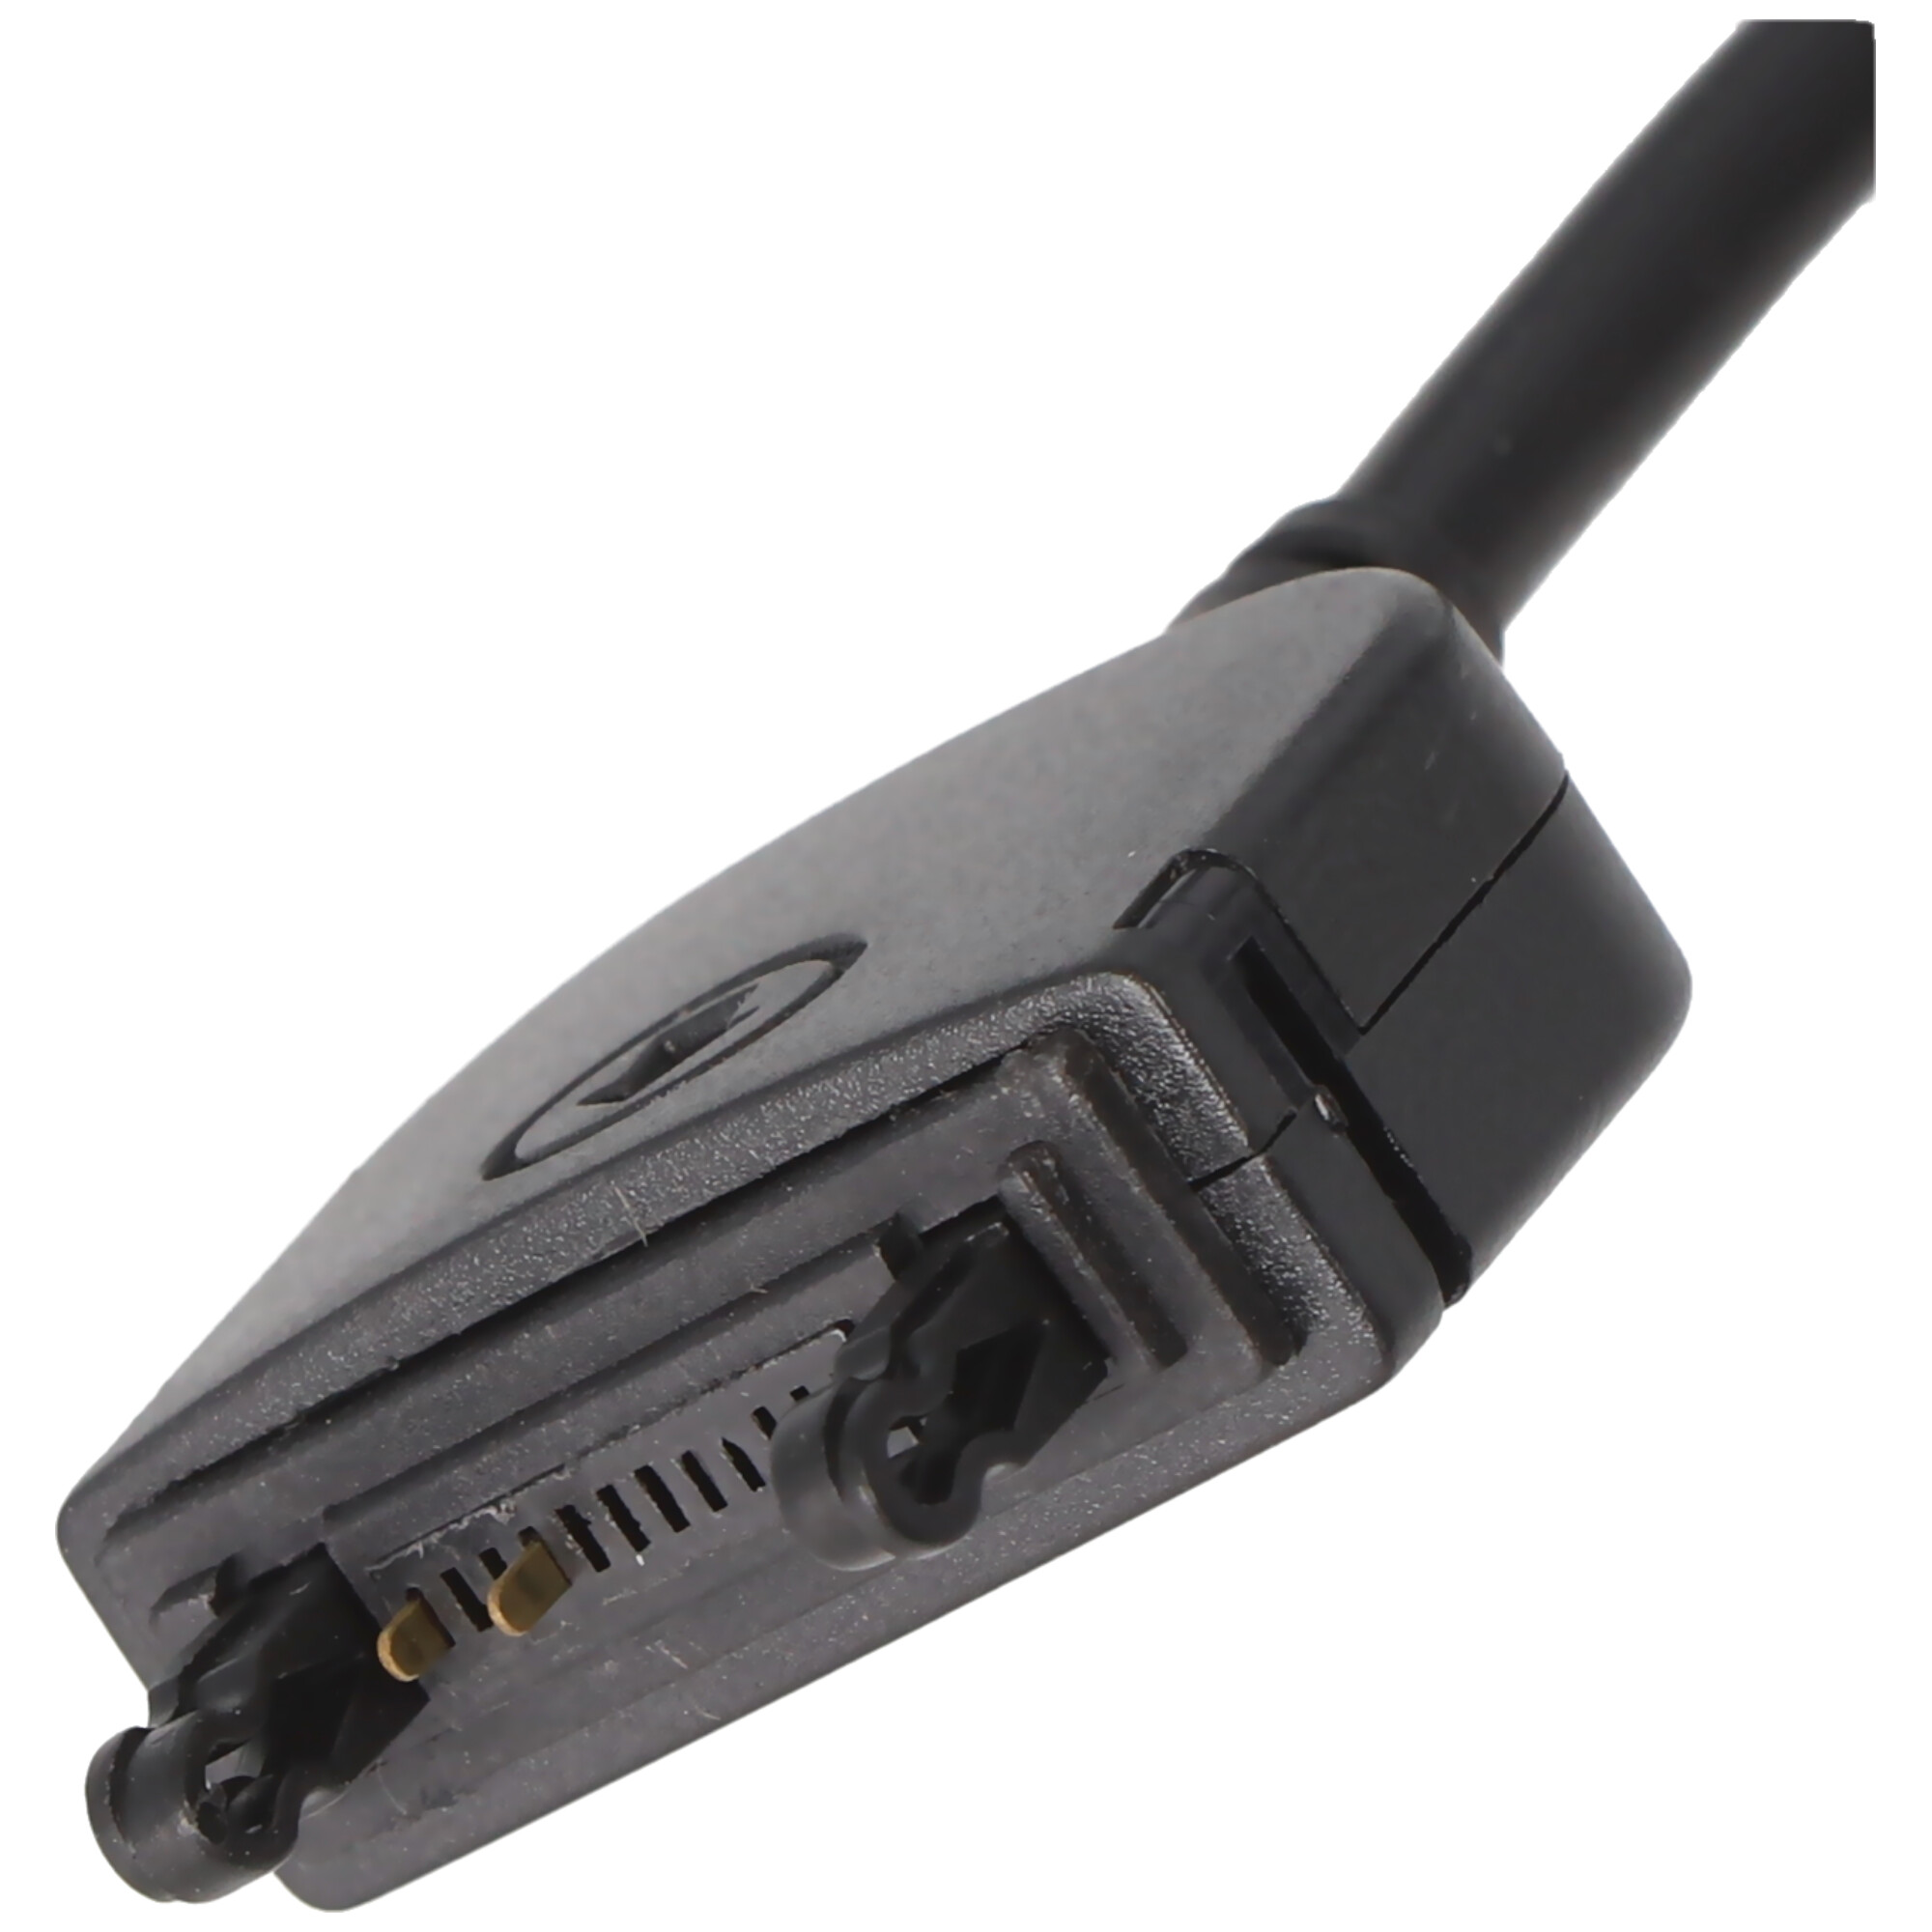 Schnell-Ladegerät für Sony Ericsson Fastport-Anschluss K750i